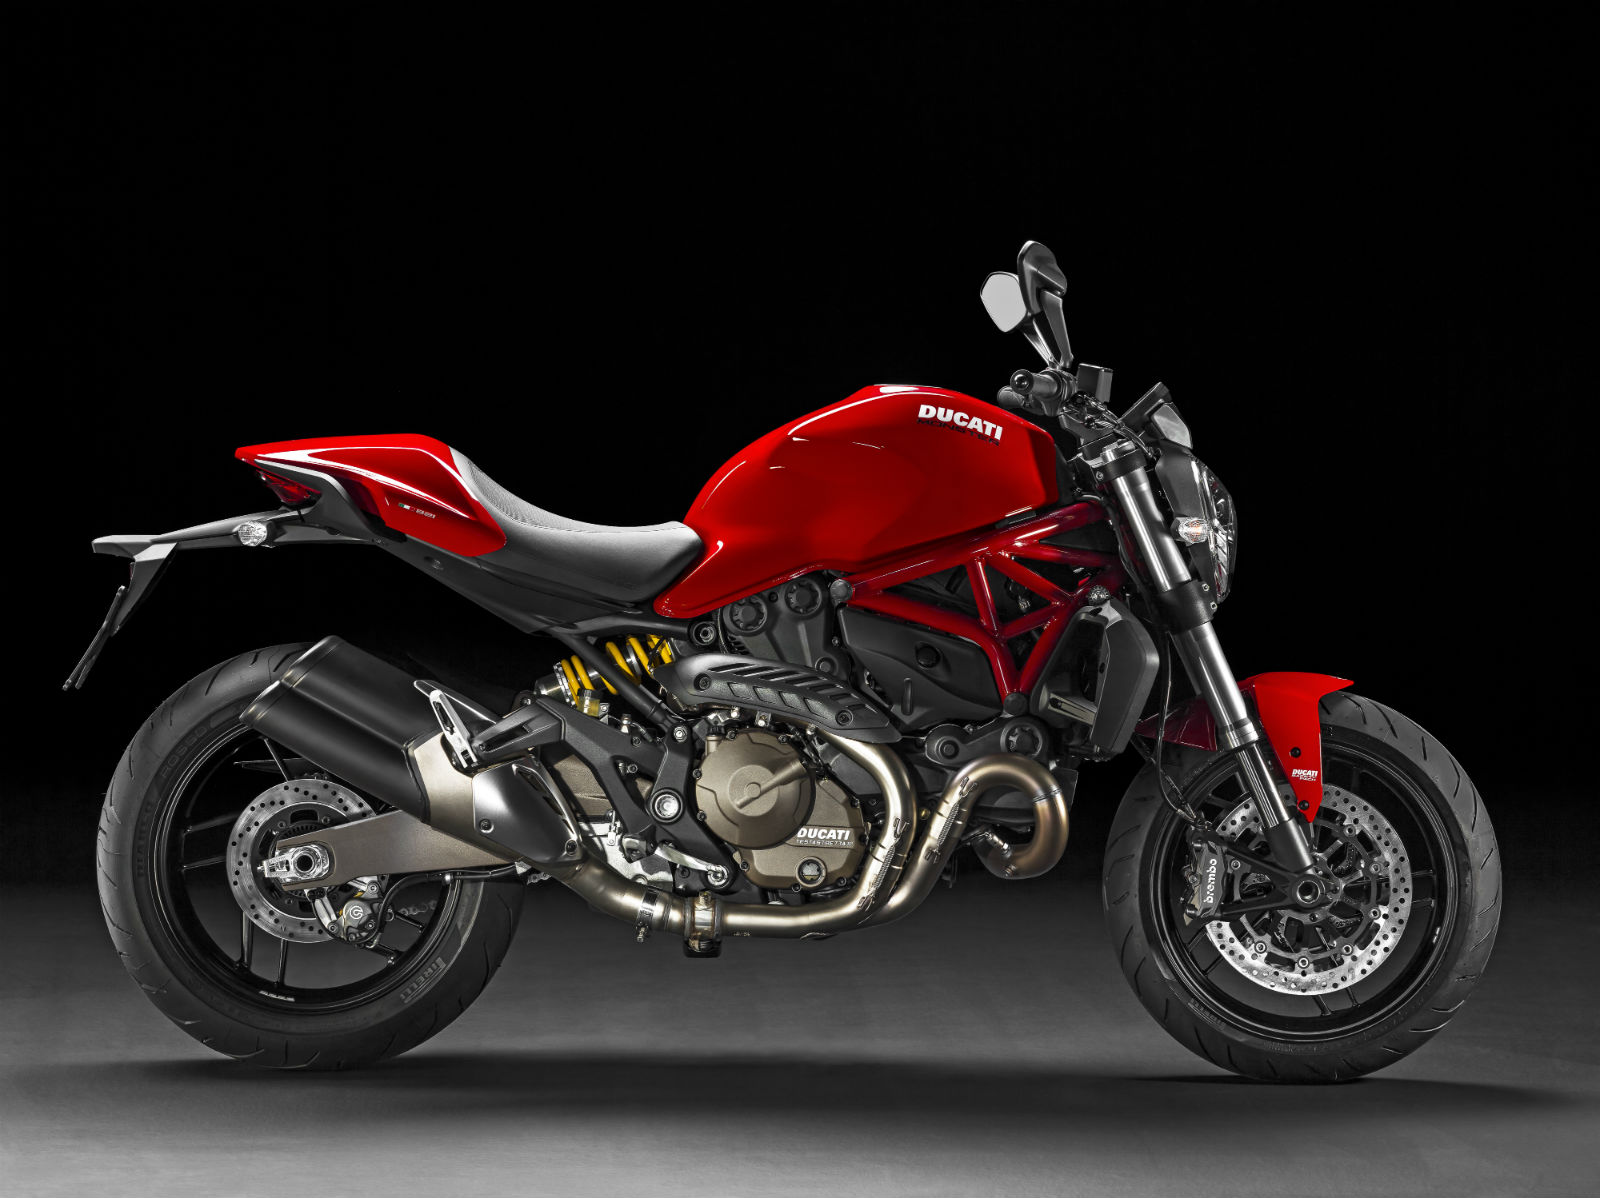 Ducati Monster 821 arrives in dealerships